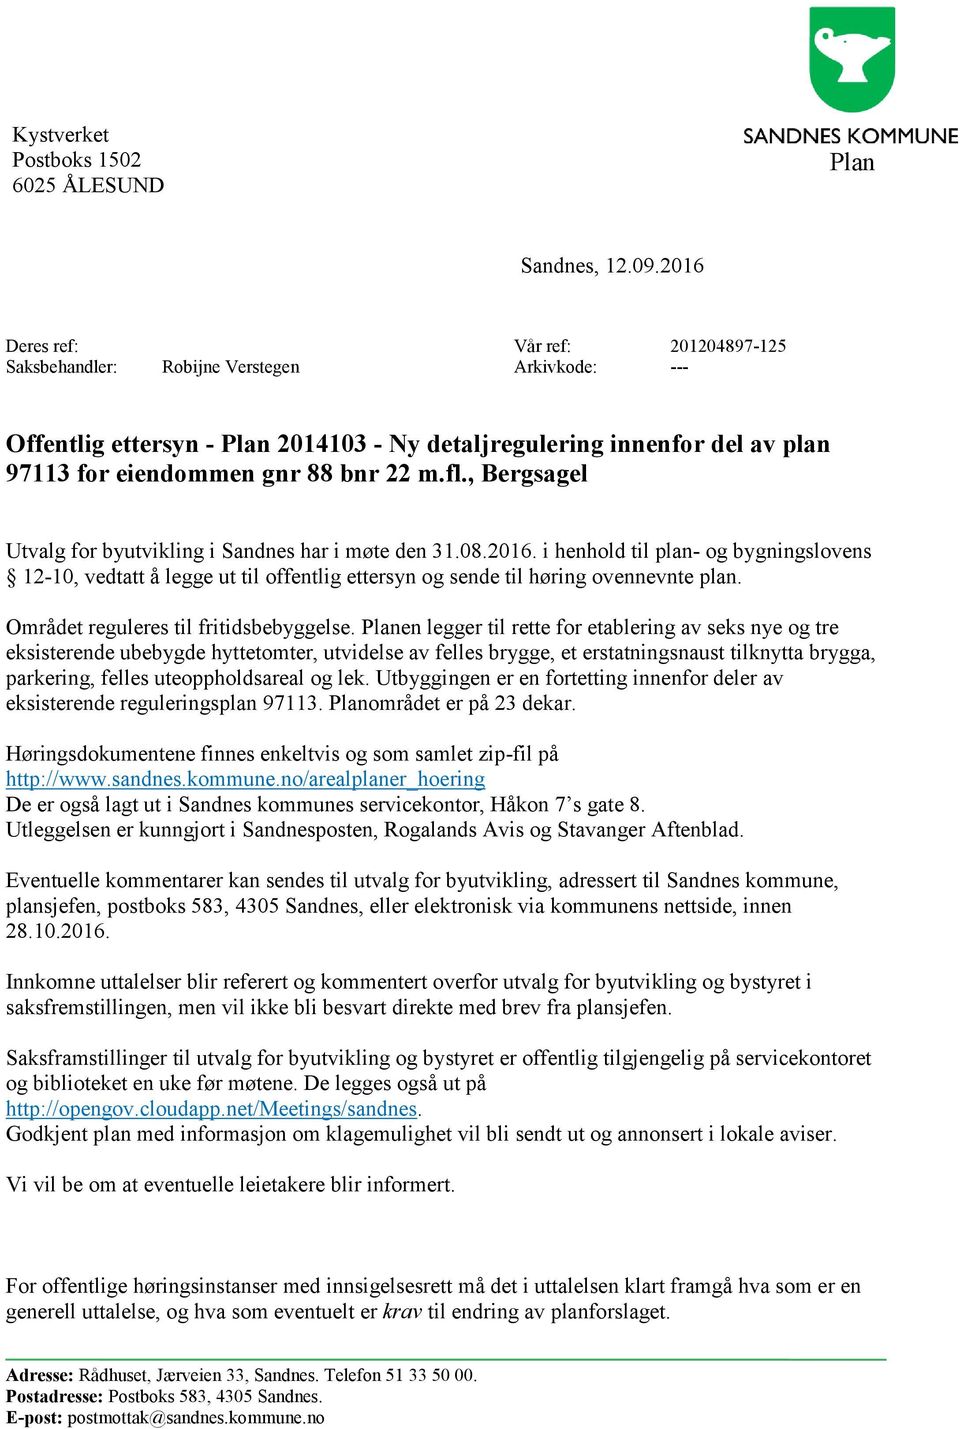 m.fl., Bergsagel Utvalg for byutvikling i Sandnes har i møte den 31.08.2016. i henhold til plan- og bygningslovens 12-10, vedtatt å legge ut til offentlig ettersyn og sende til høring ovennevnte plan.